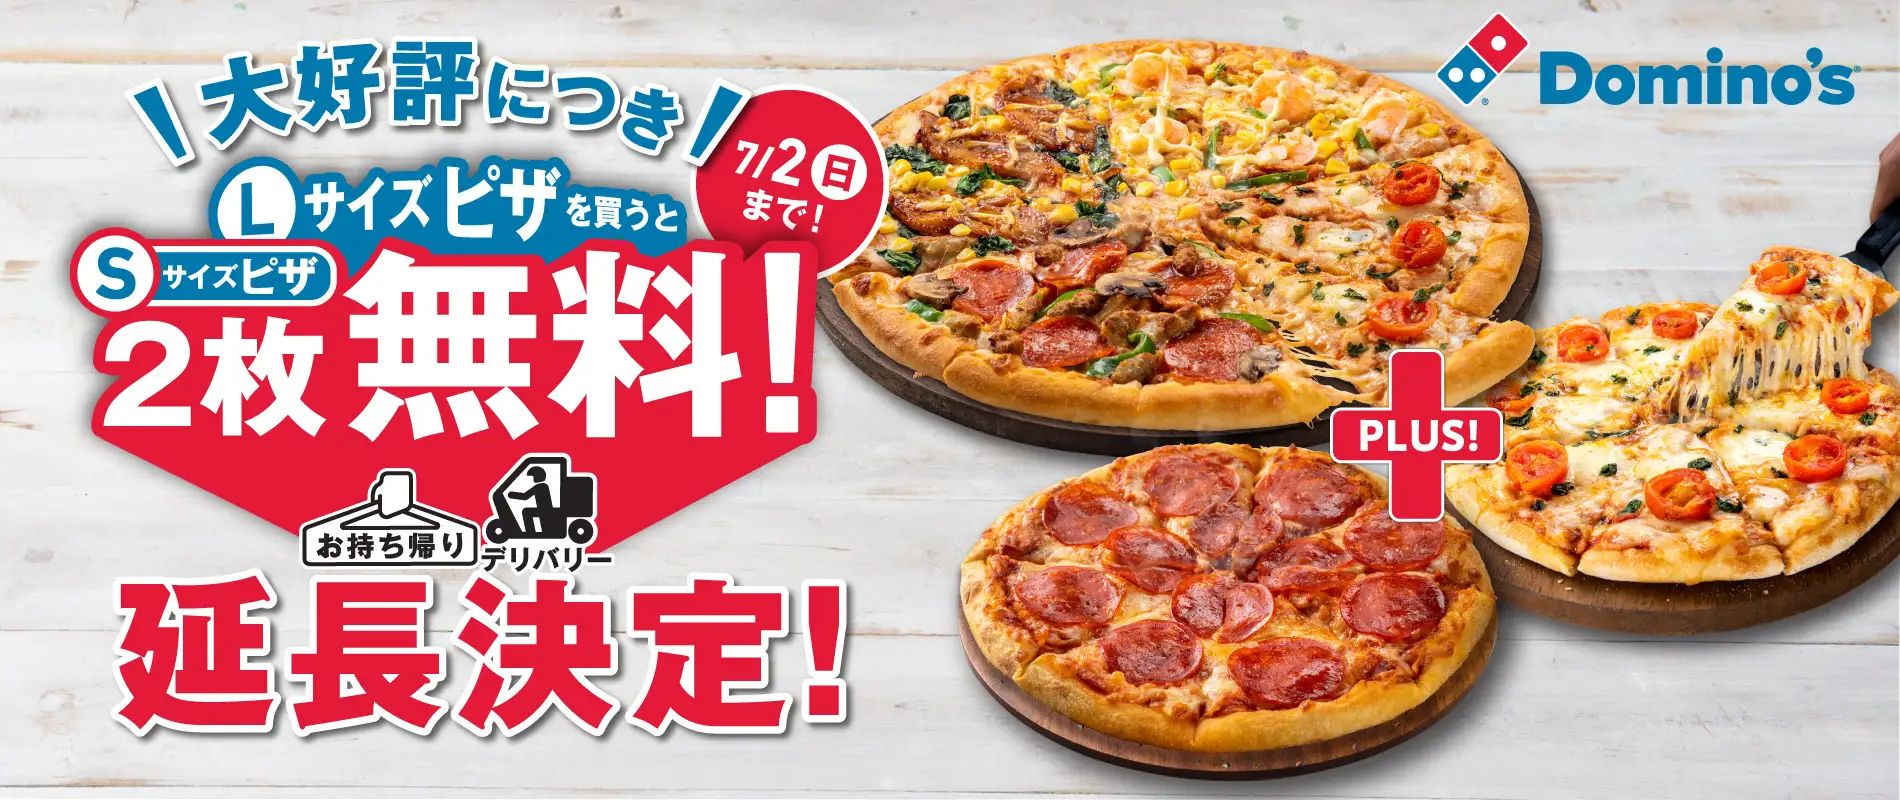 ドミノ・ピザ「Lサイズ買うとSサイズ2枚無料!」延長決定、7月2日まで